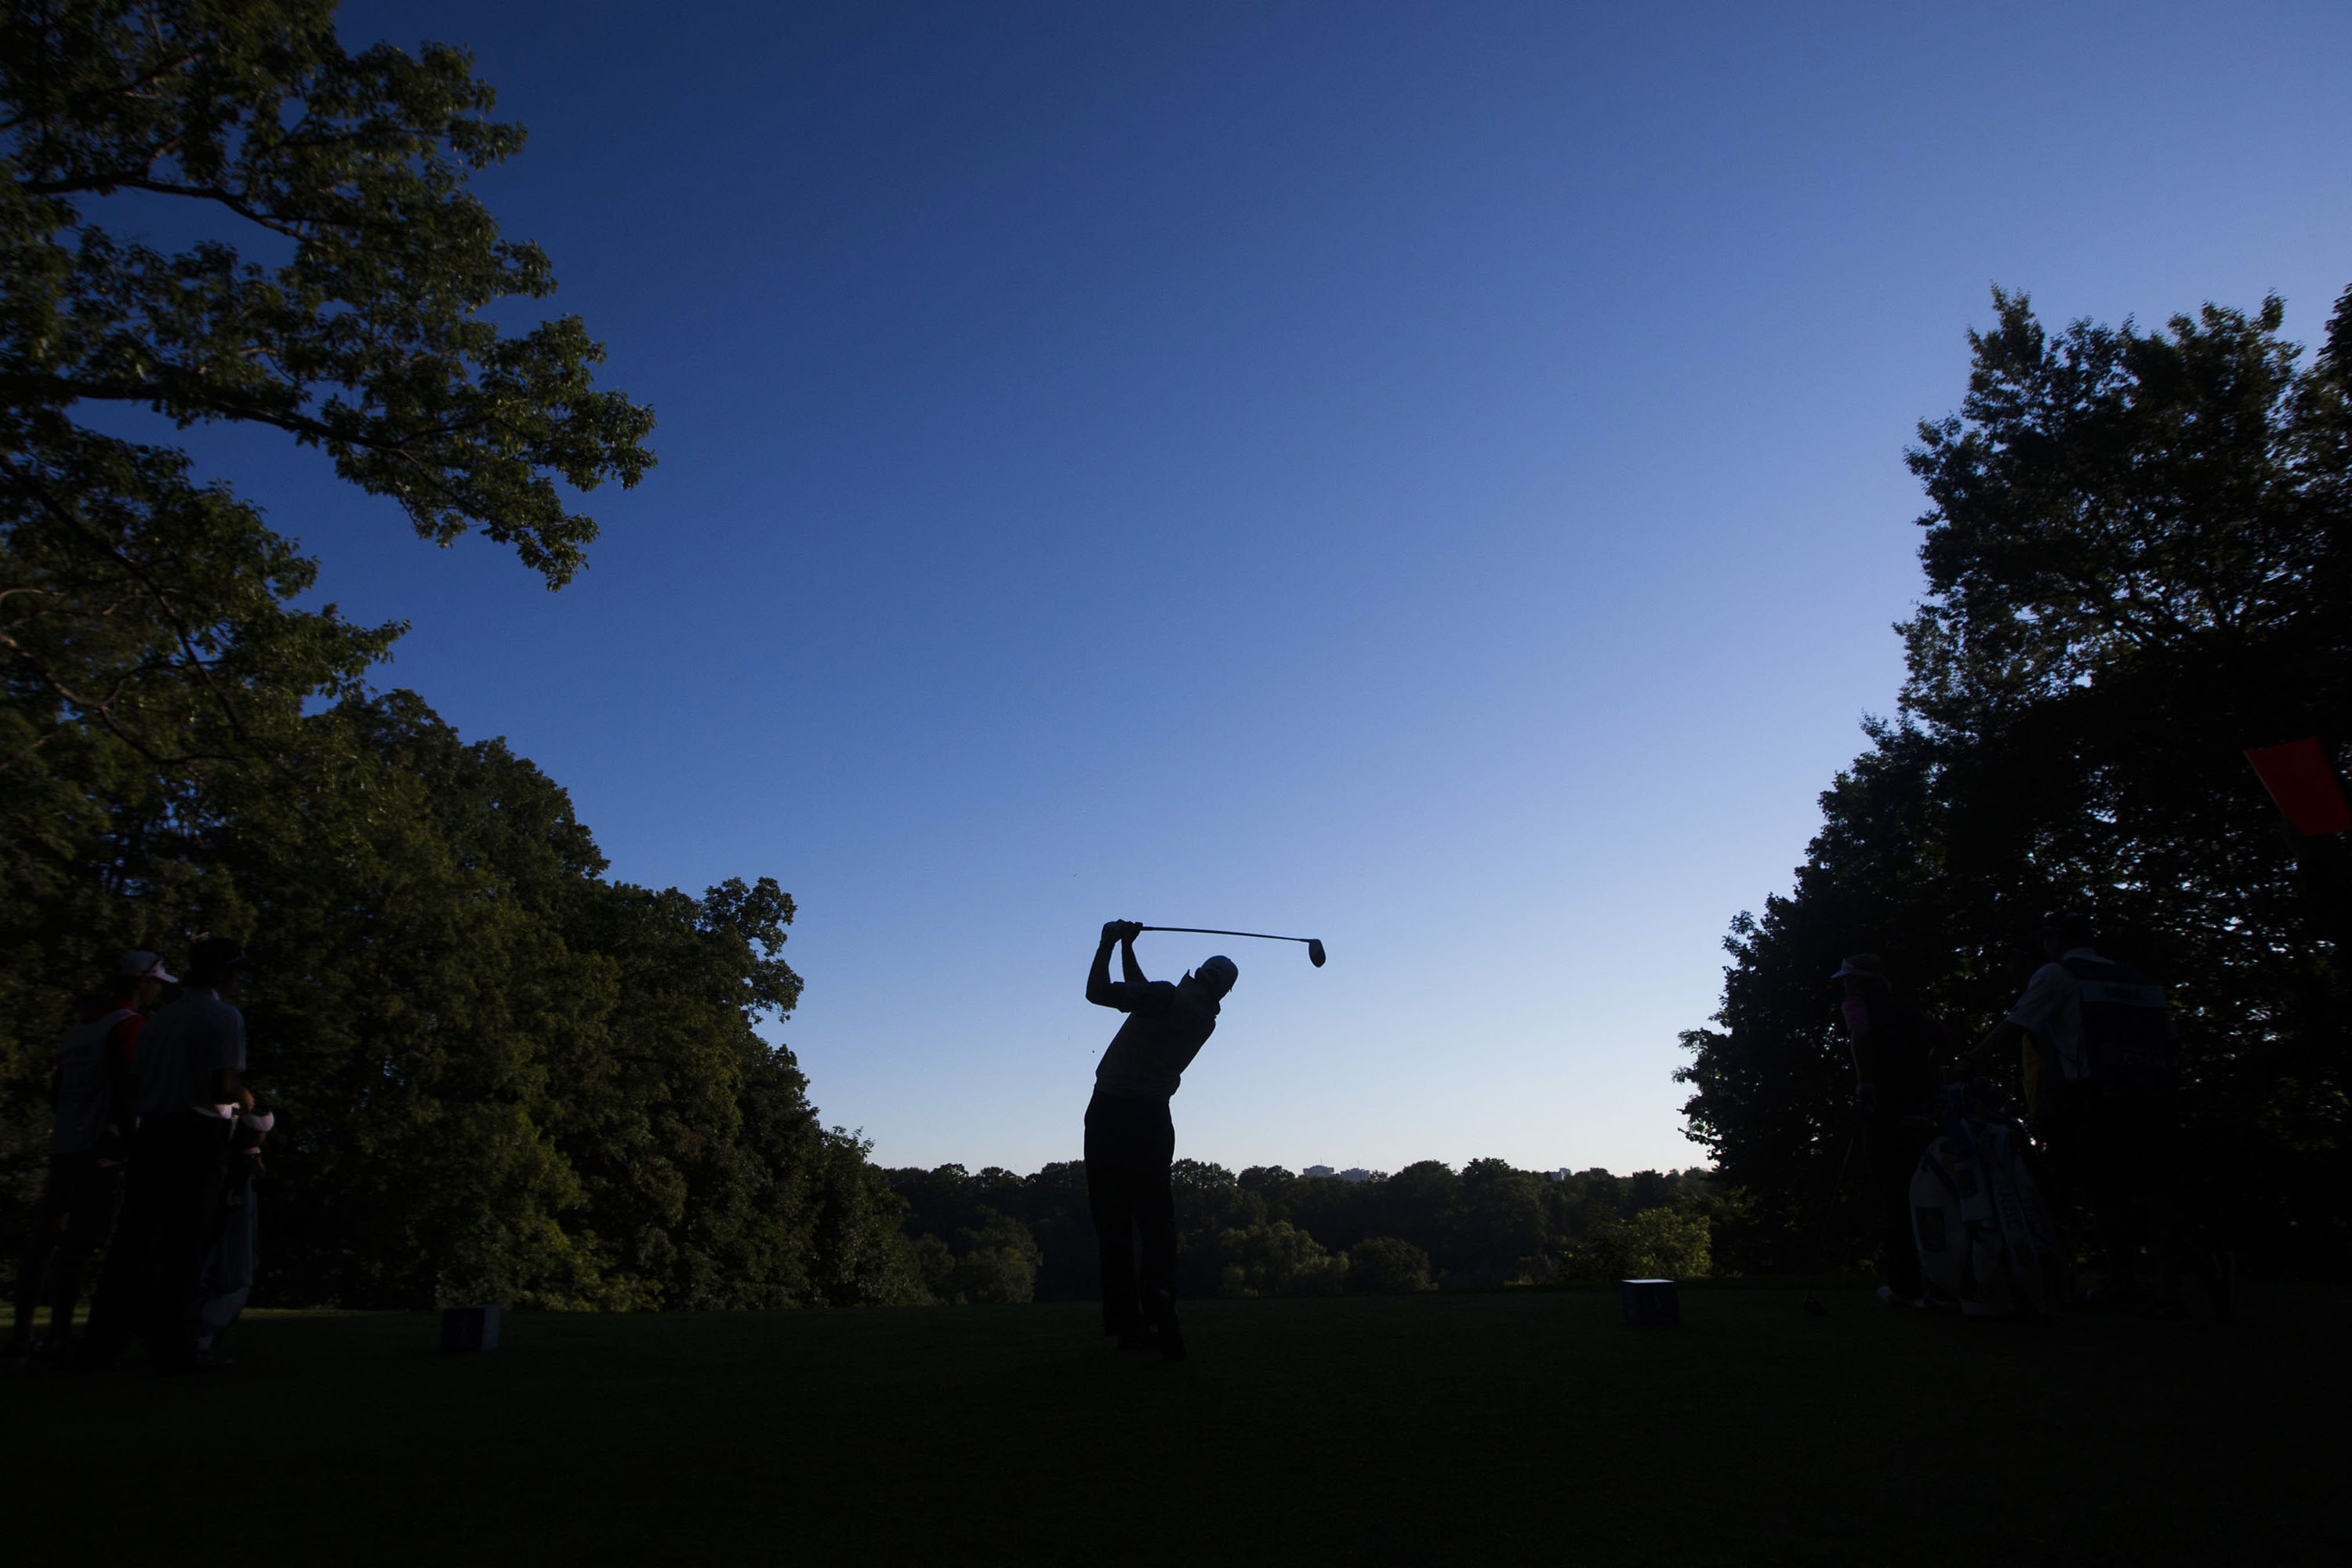 Ayer comenzó el Open de Canadá en el Abbey Golf Club de Oakville, Ontario, donde Scott Piercy defien